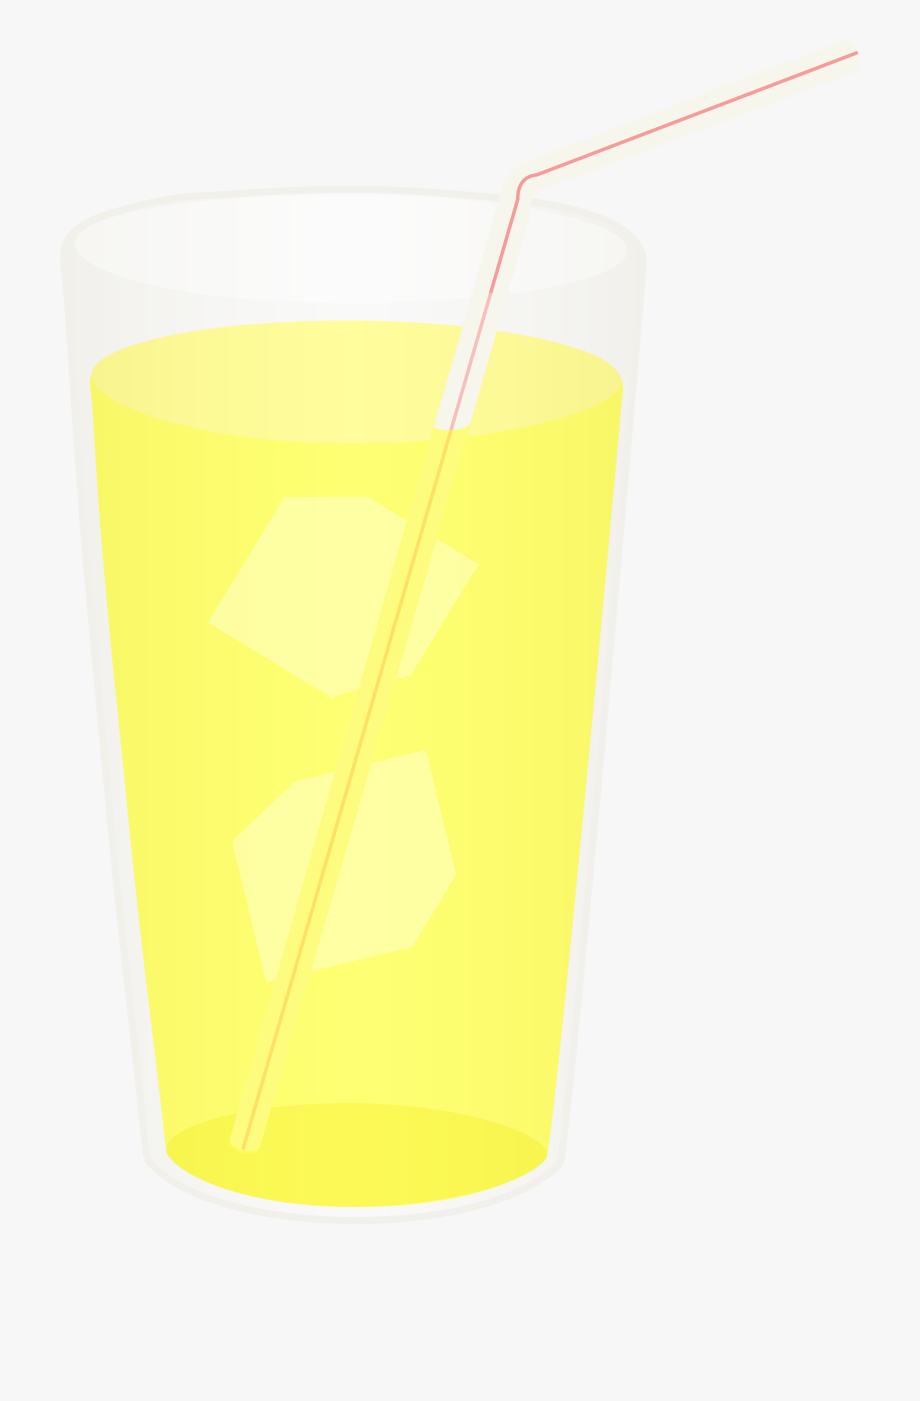 lemonade clipart glass lemonade